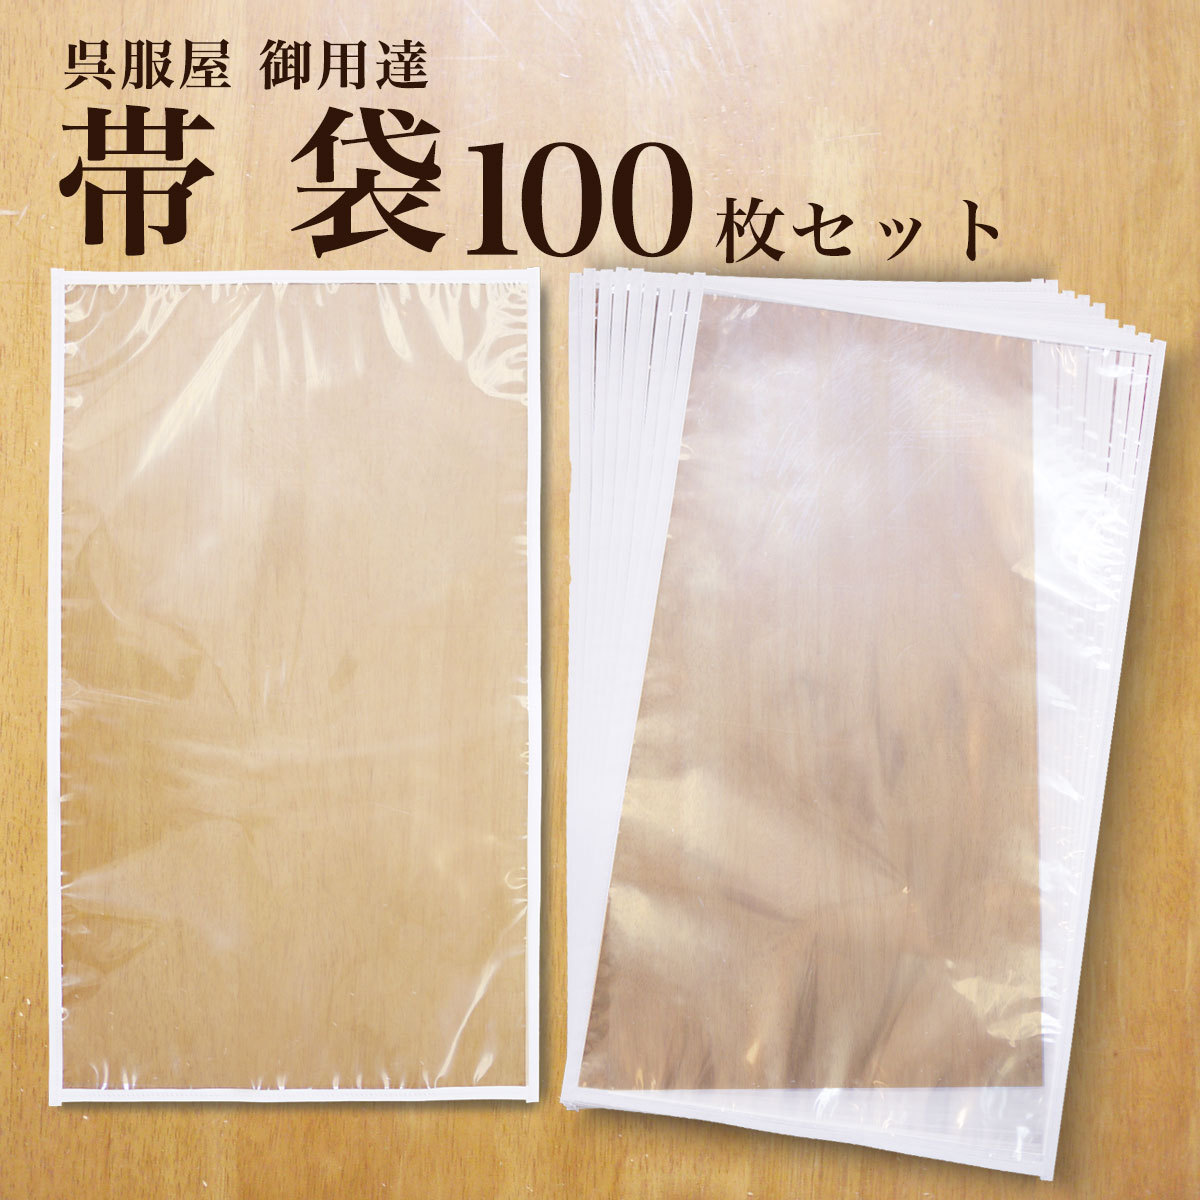 保管 帯袋 着物 100枚セット 日本製 帯 収納 保管 袋帯 名古屋帯 京